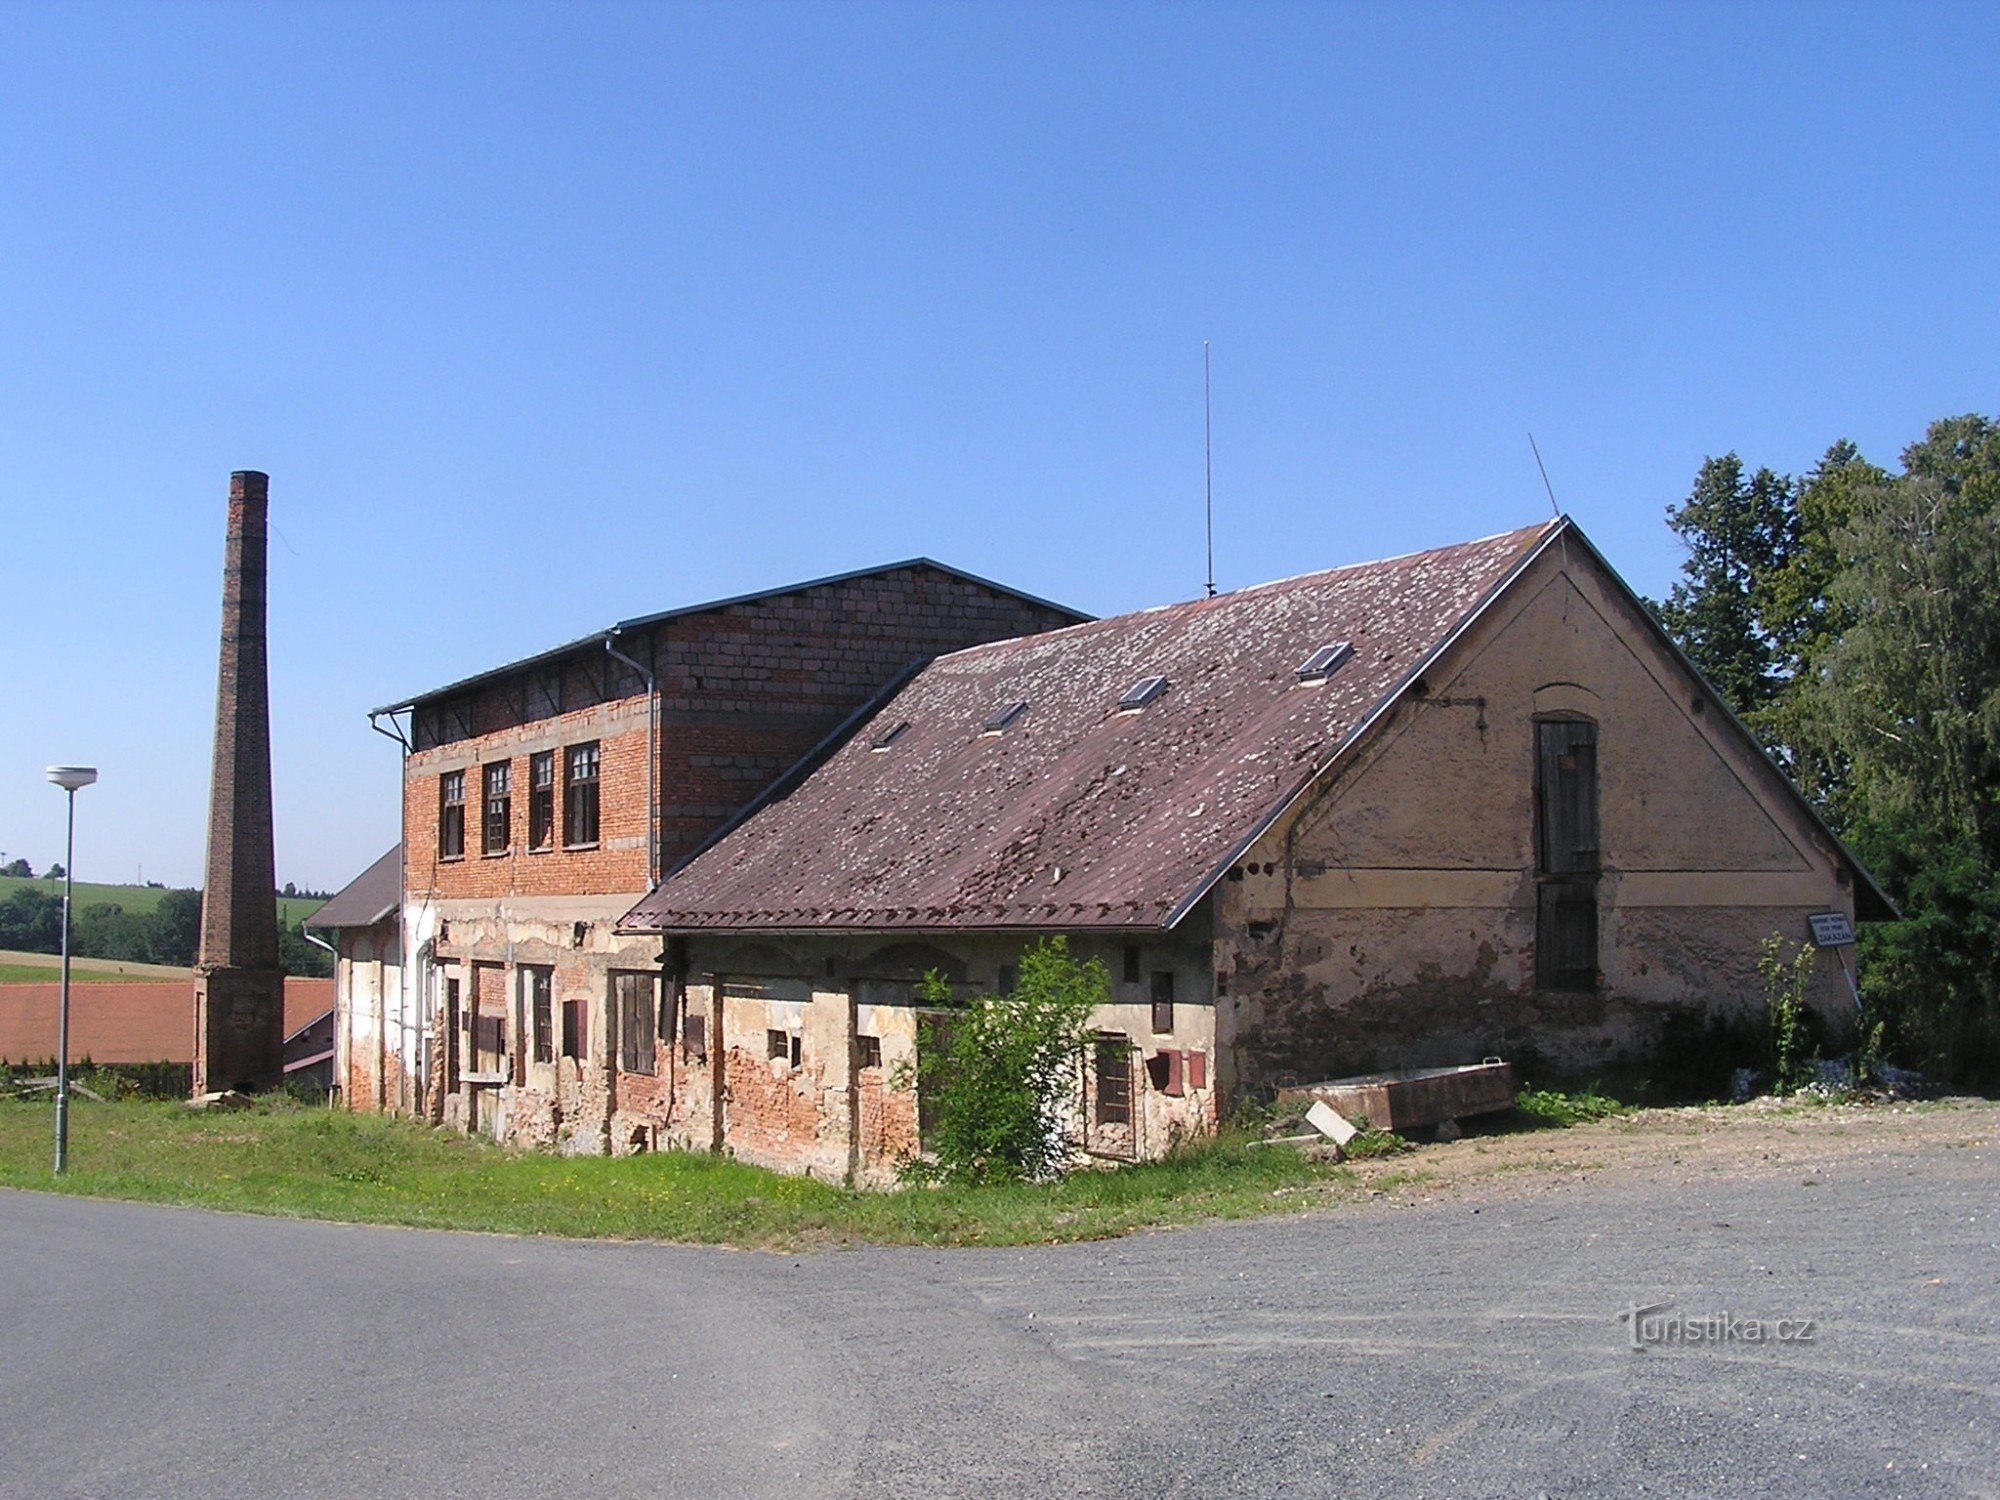 Fort in Zbraslavice - boerderijgebouwen - 7.8.2008 augustus XNUMX